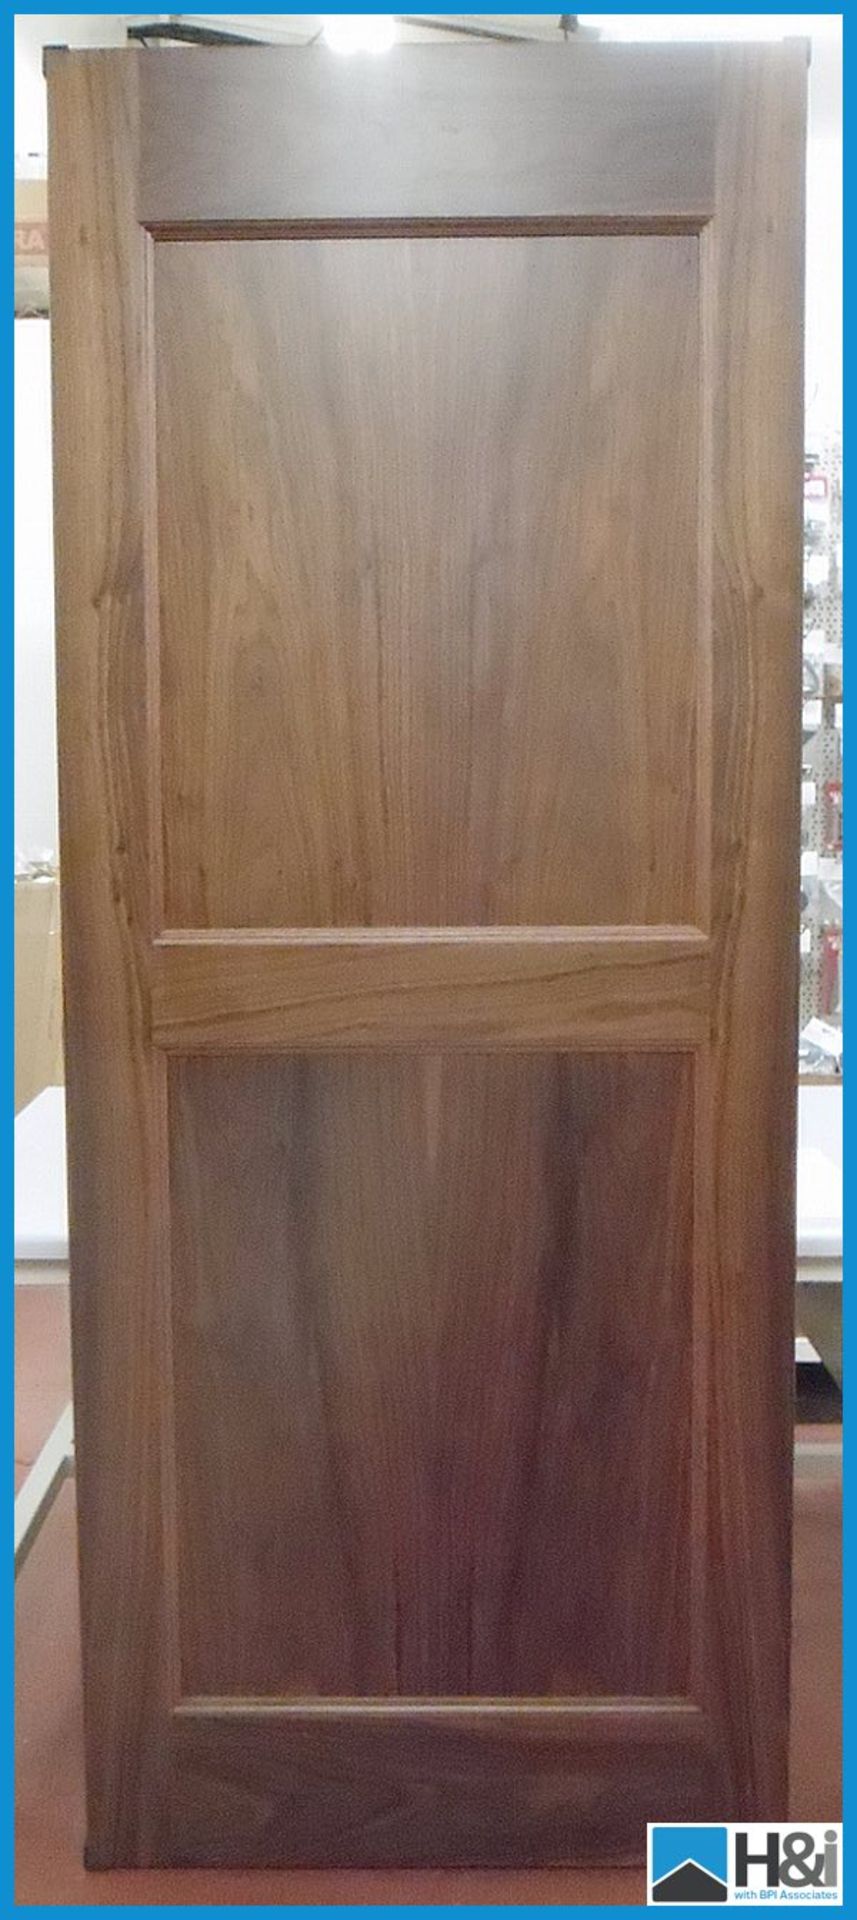 2ft 8in, 80x32", 2032x813mm, Arden external walnut prefinished external door doors. 44mm thick.